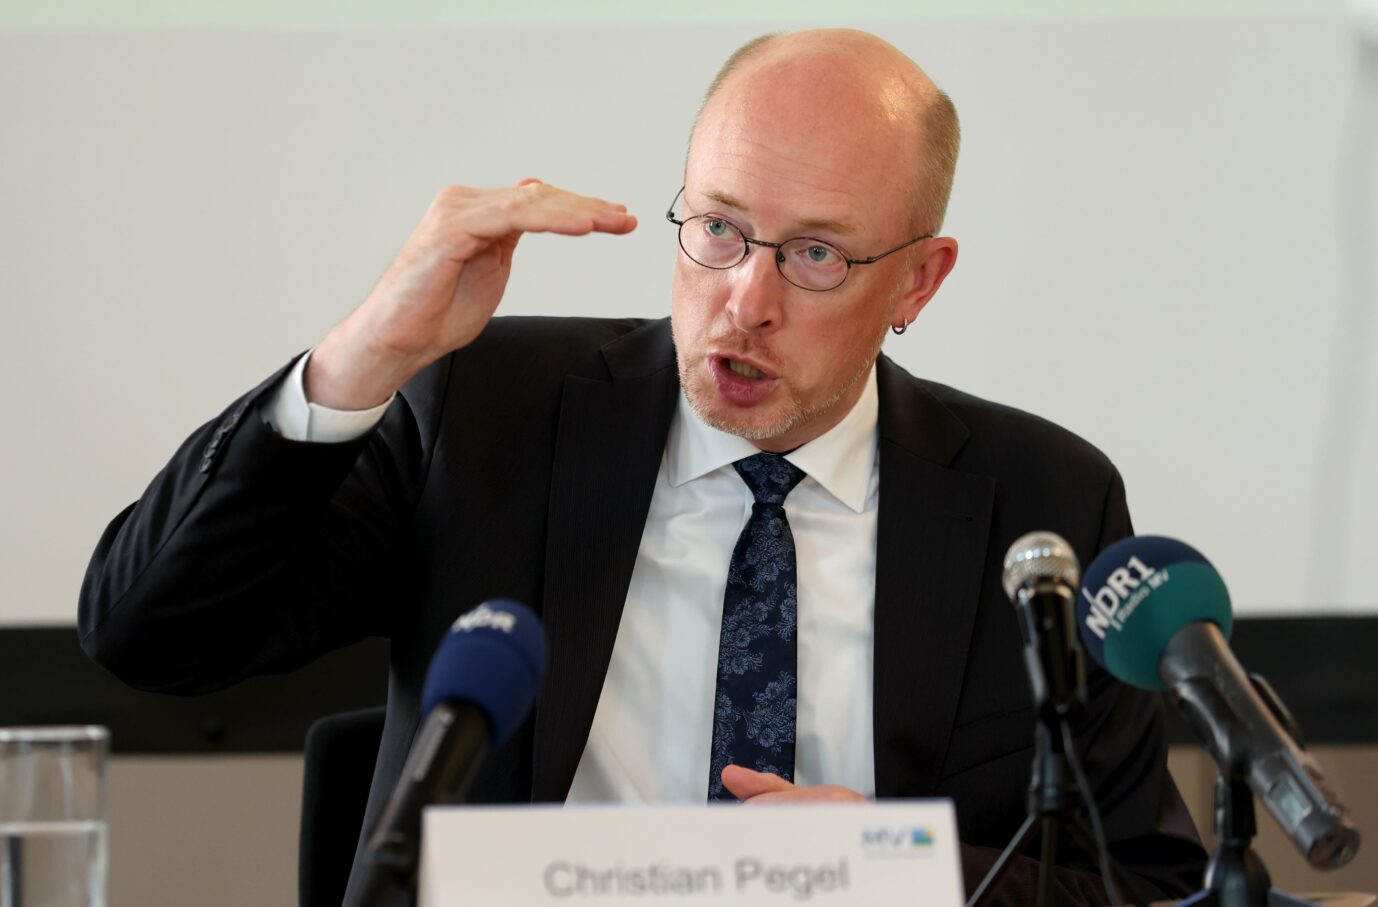 Syrer greift Pollizist an: Mecklenburg-Vorpommerns Innenminister Christian Pegel (SPD) sprach über den schwerverletzten Polizisten, nannte aber die Nationalität des Täters nicht.